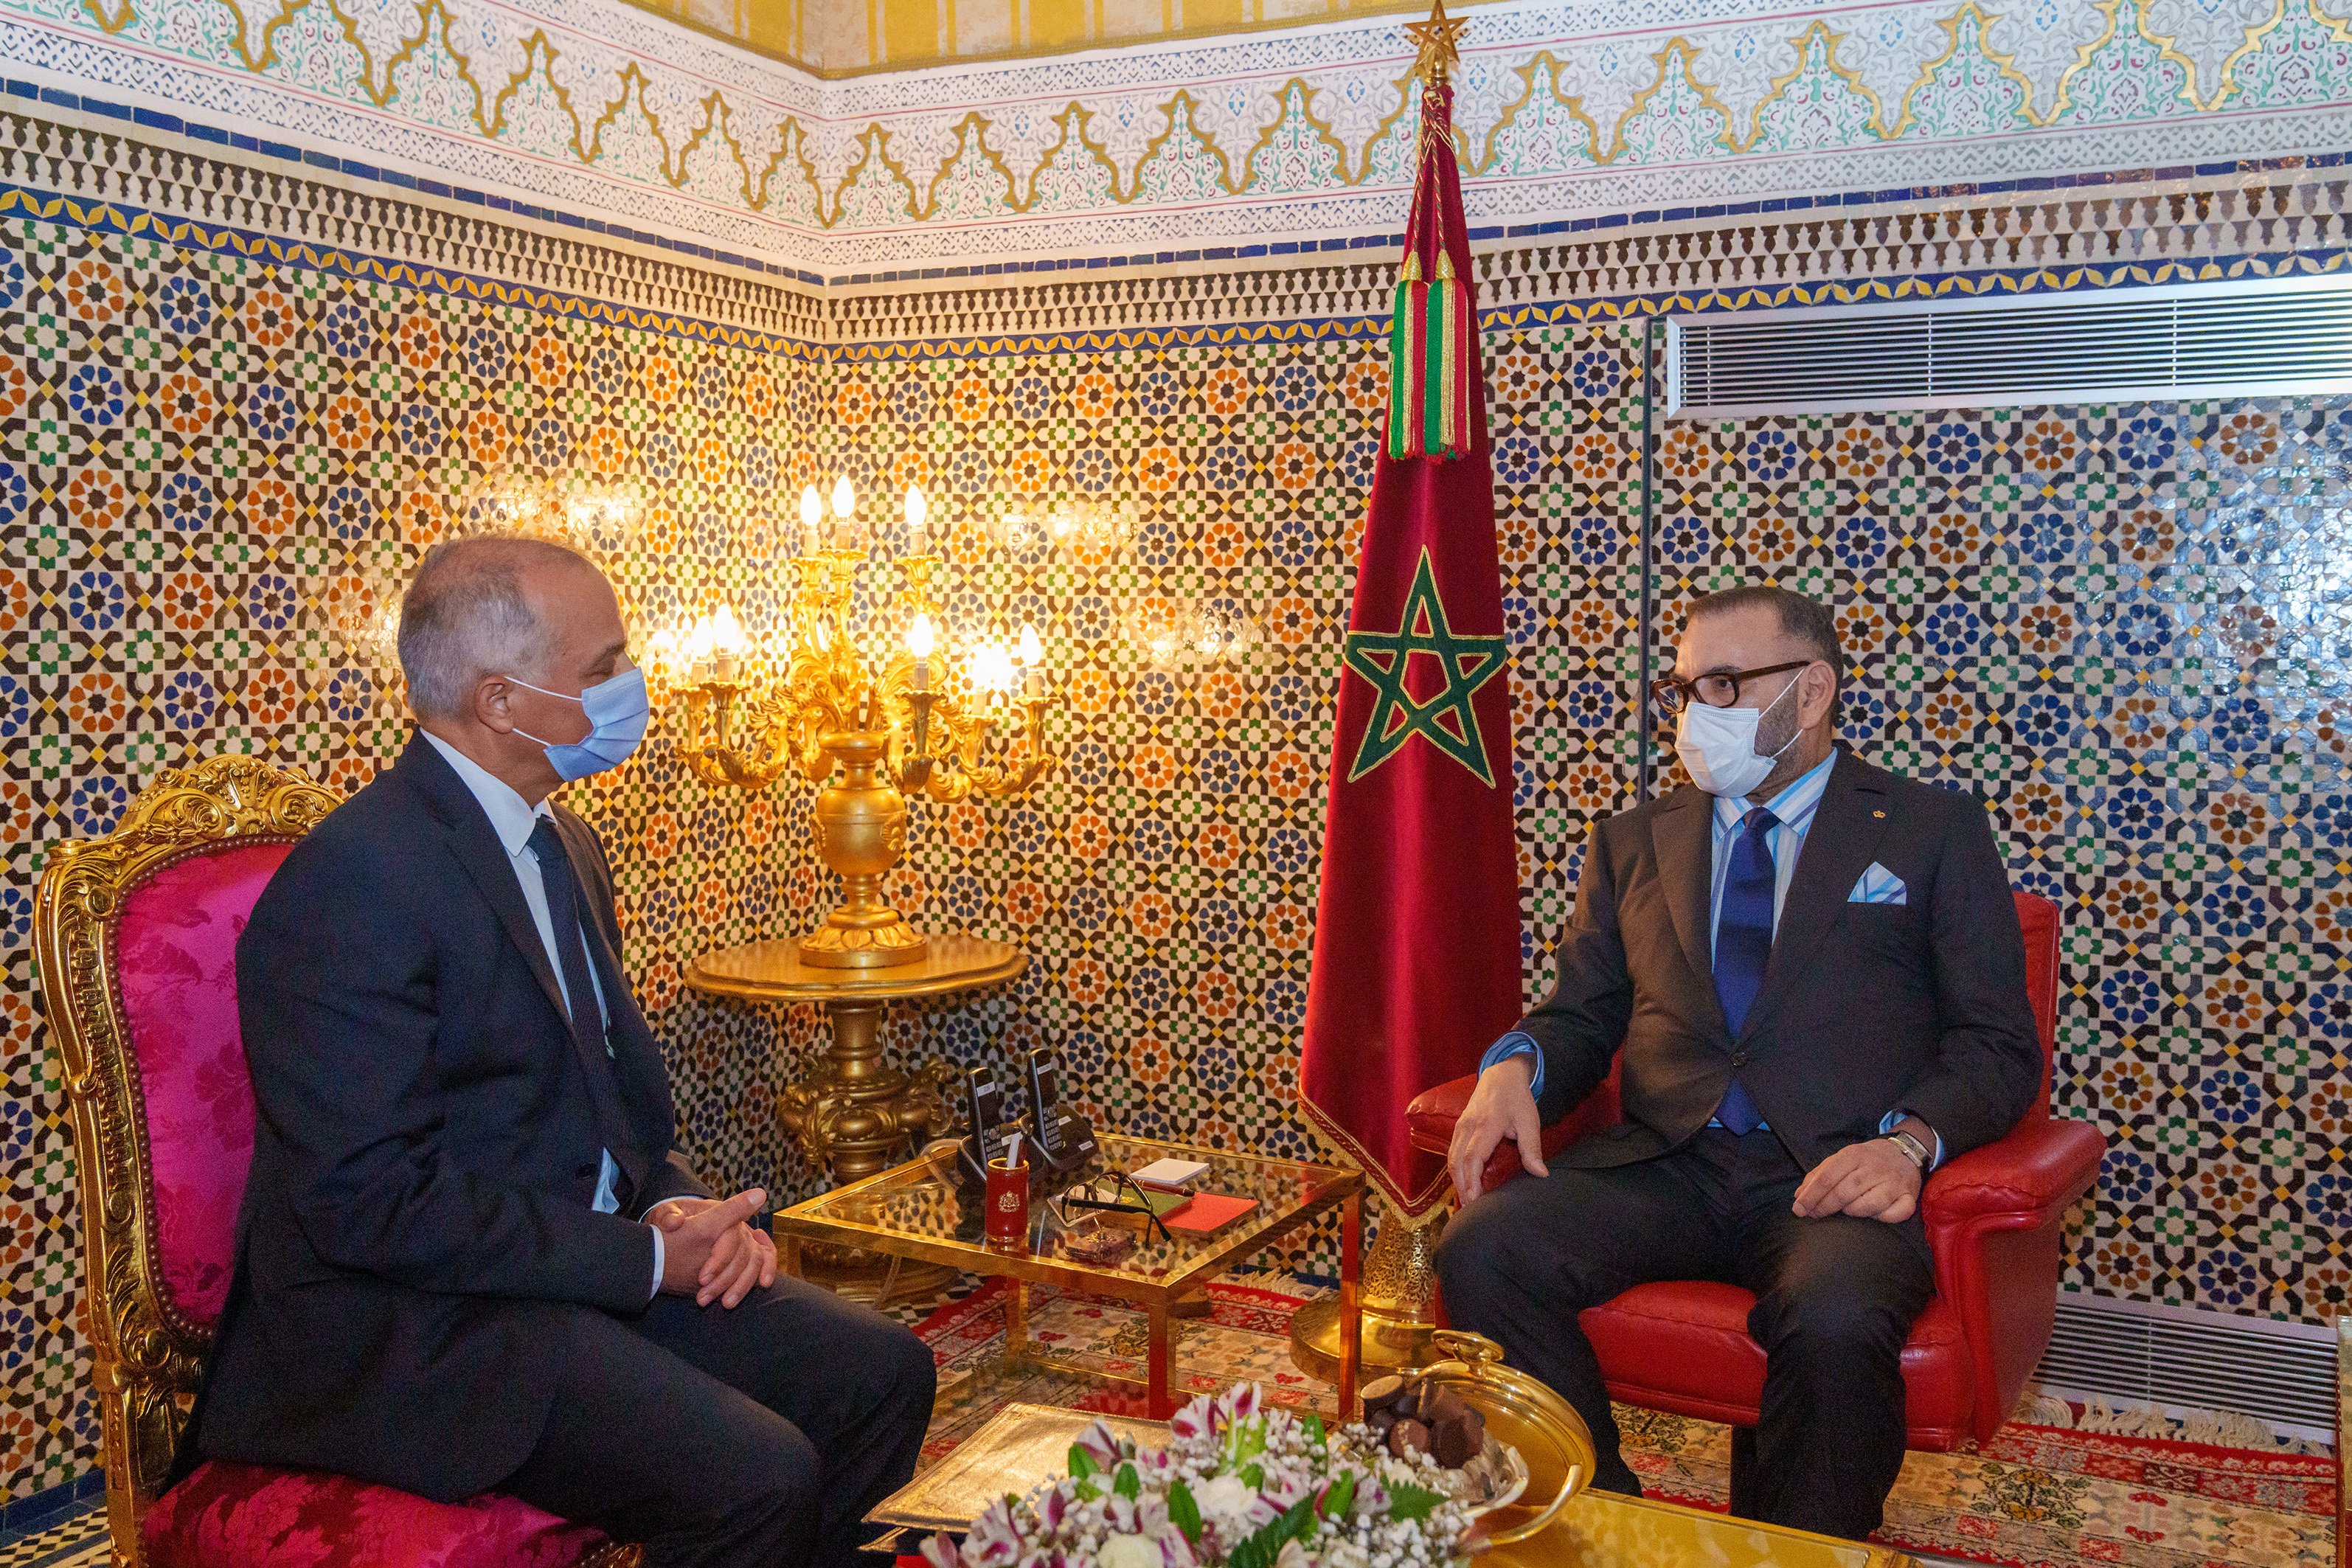 El Marroc recorda a Sánchez els seus "favors" contra l'independentisme català